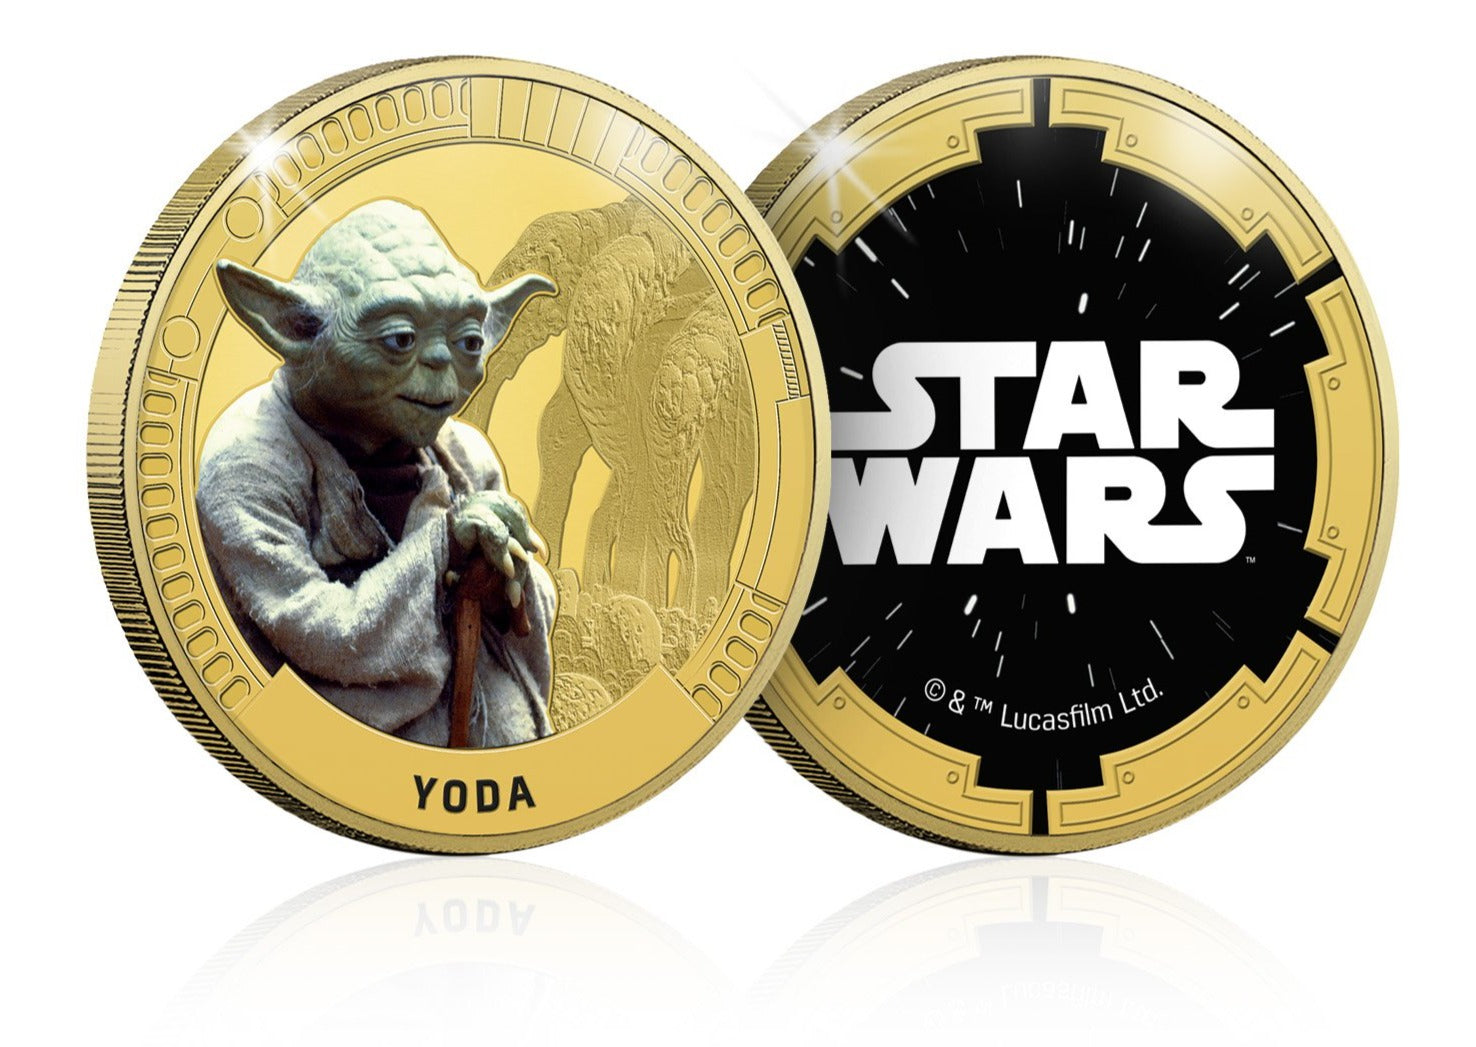 Star Wars Trilogía Original Episodios IV - VI - Yoda - Moneda / Medalla conmemorativa acuñada con baño en Oro 24 quilates y coloreada a 4 colores - 44mm